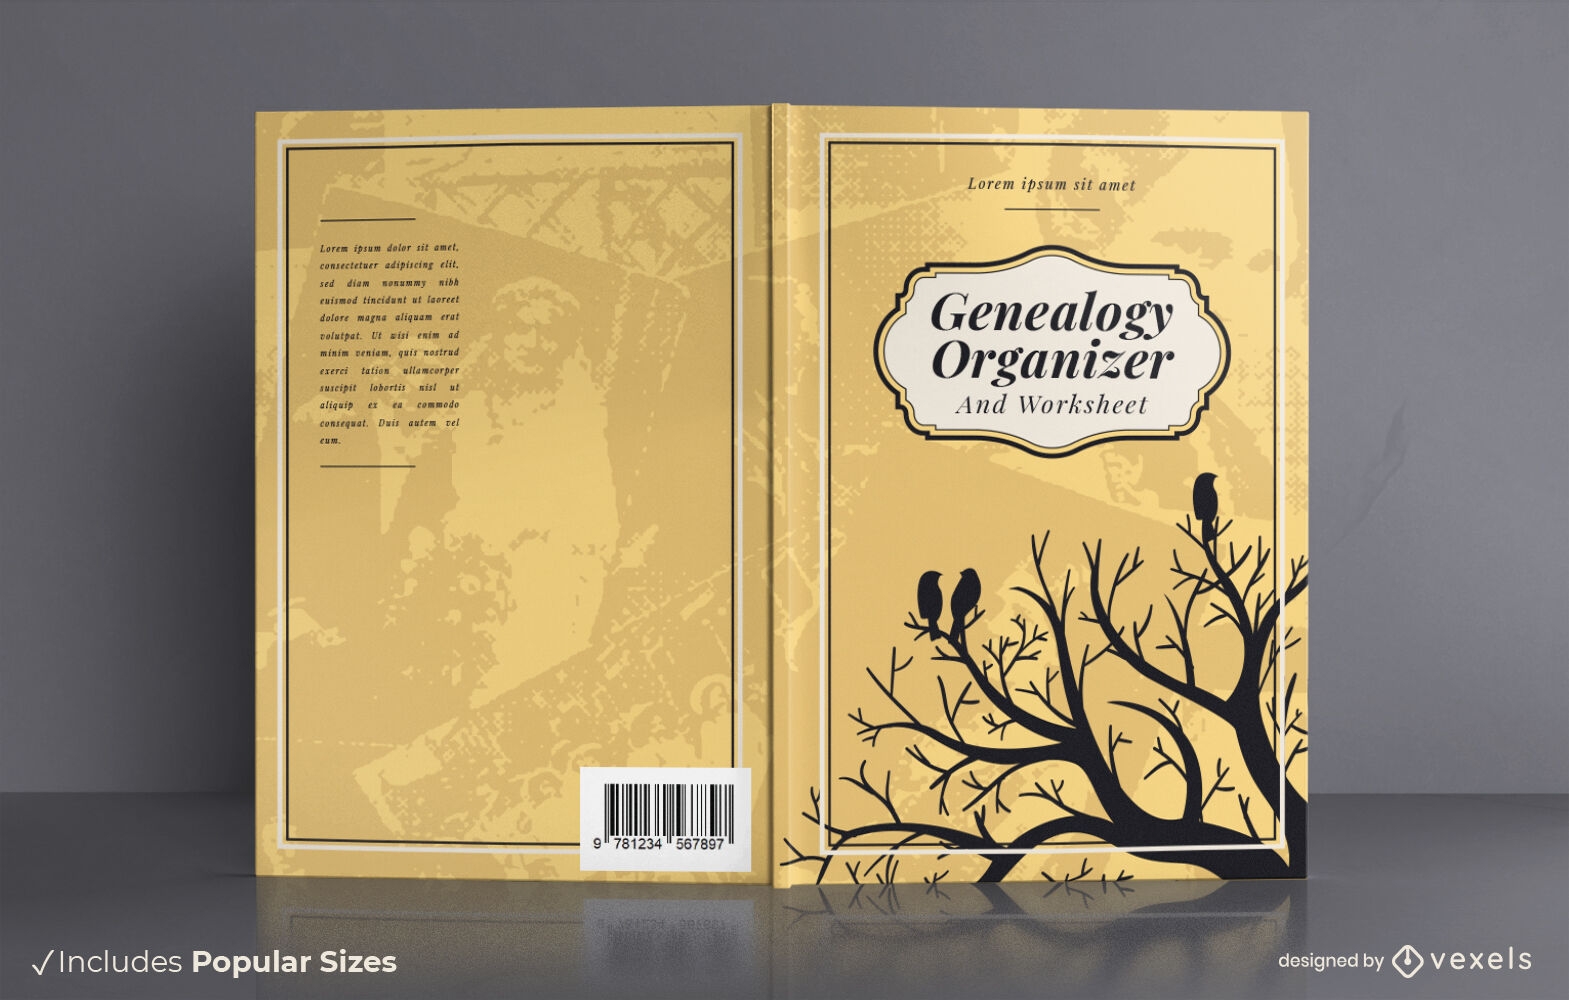 Dise?o de portada de libro organizador de genealog?a.